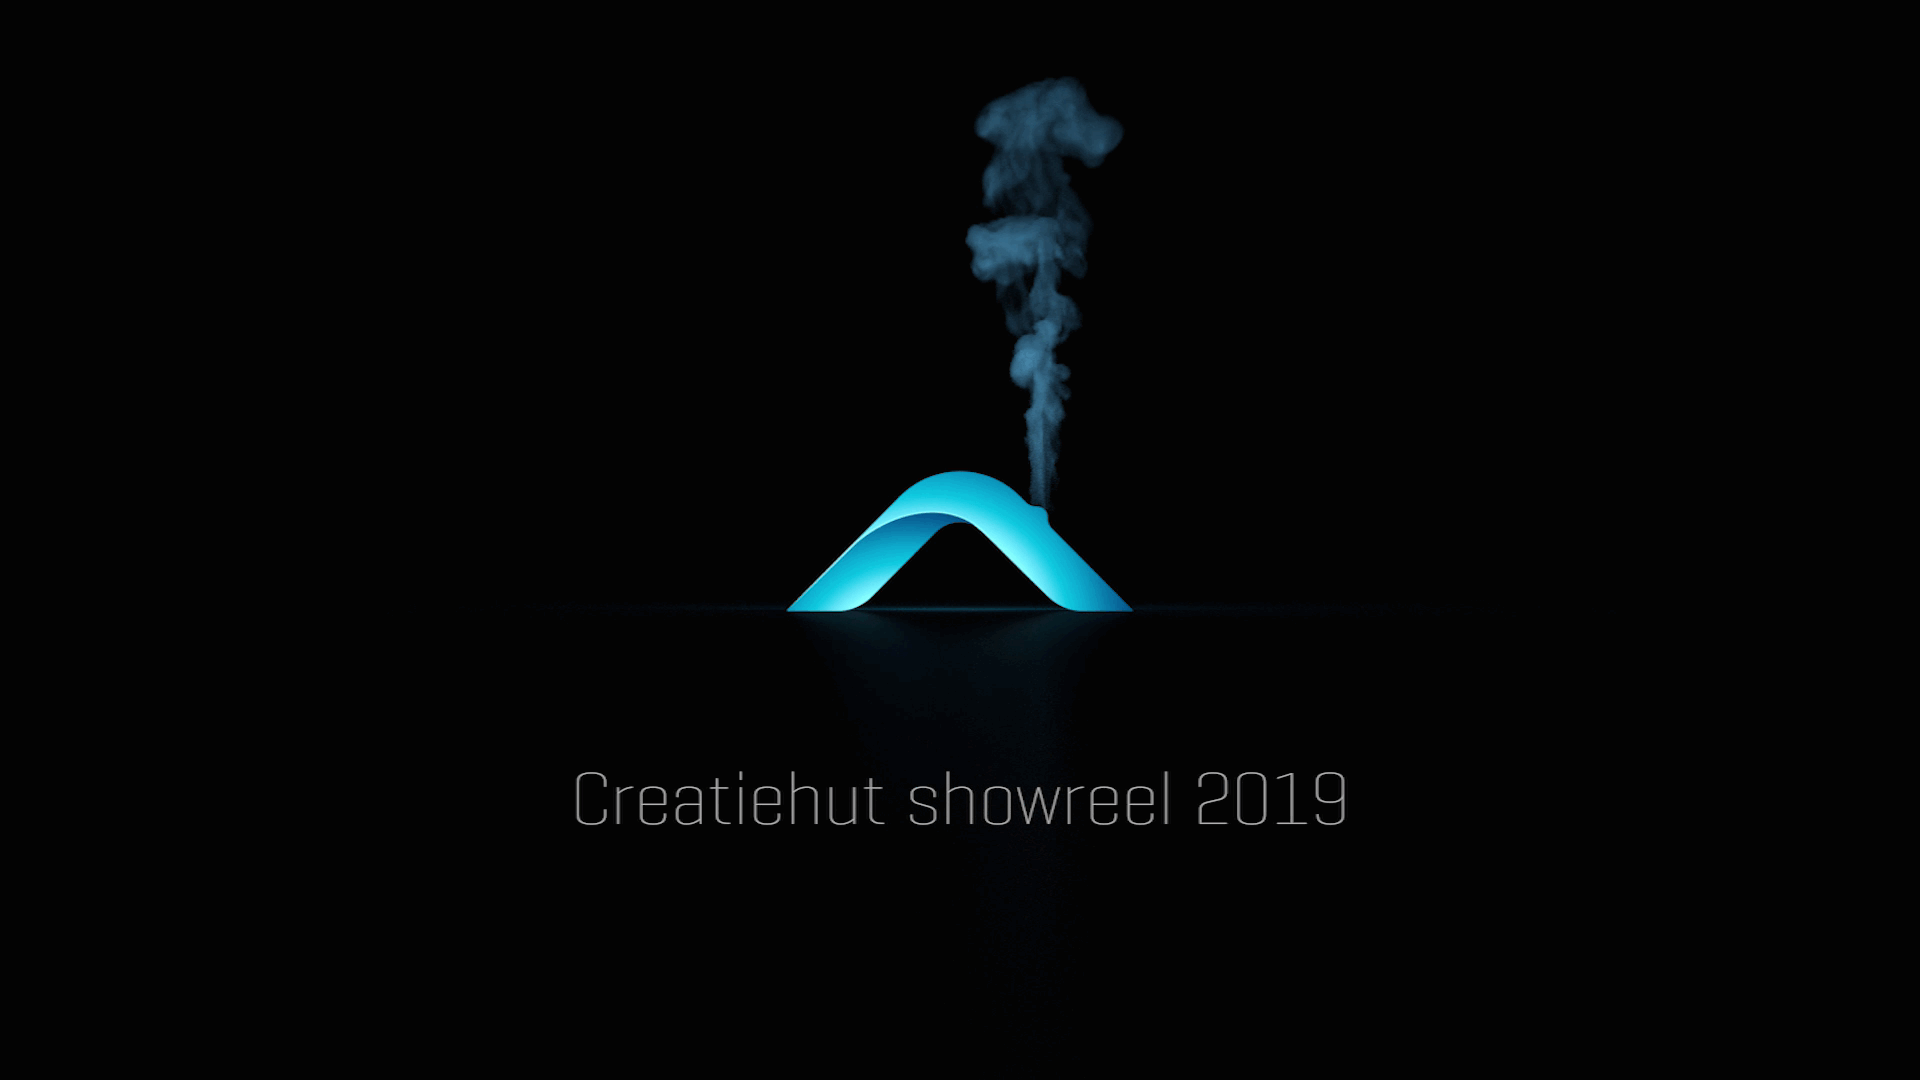 Creatiehut Showreel 2019 (Gilze)